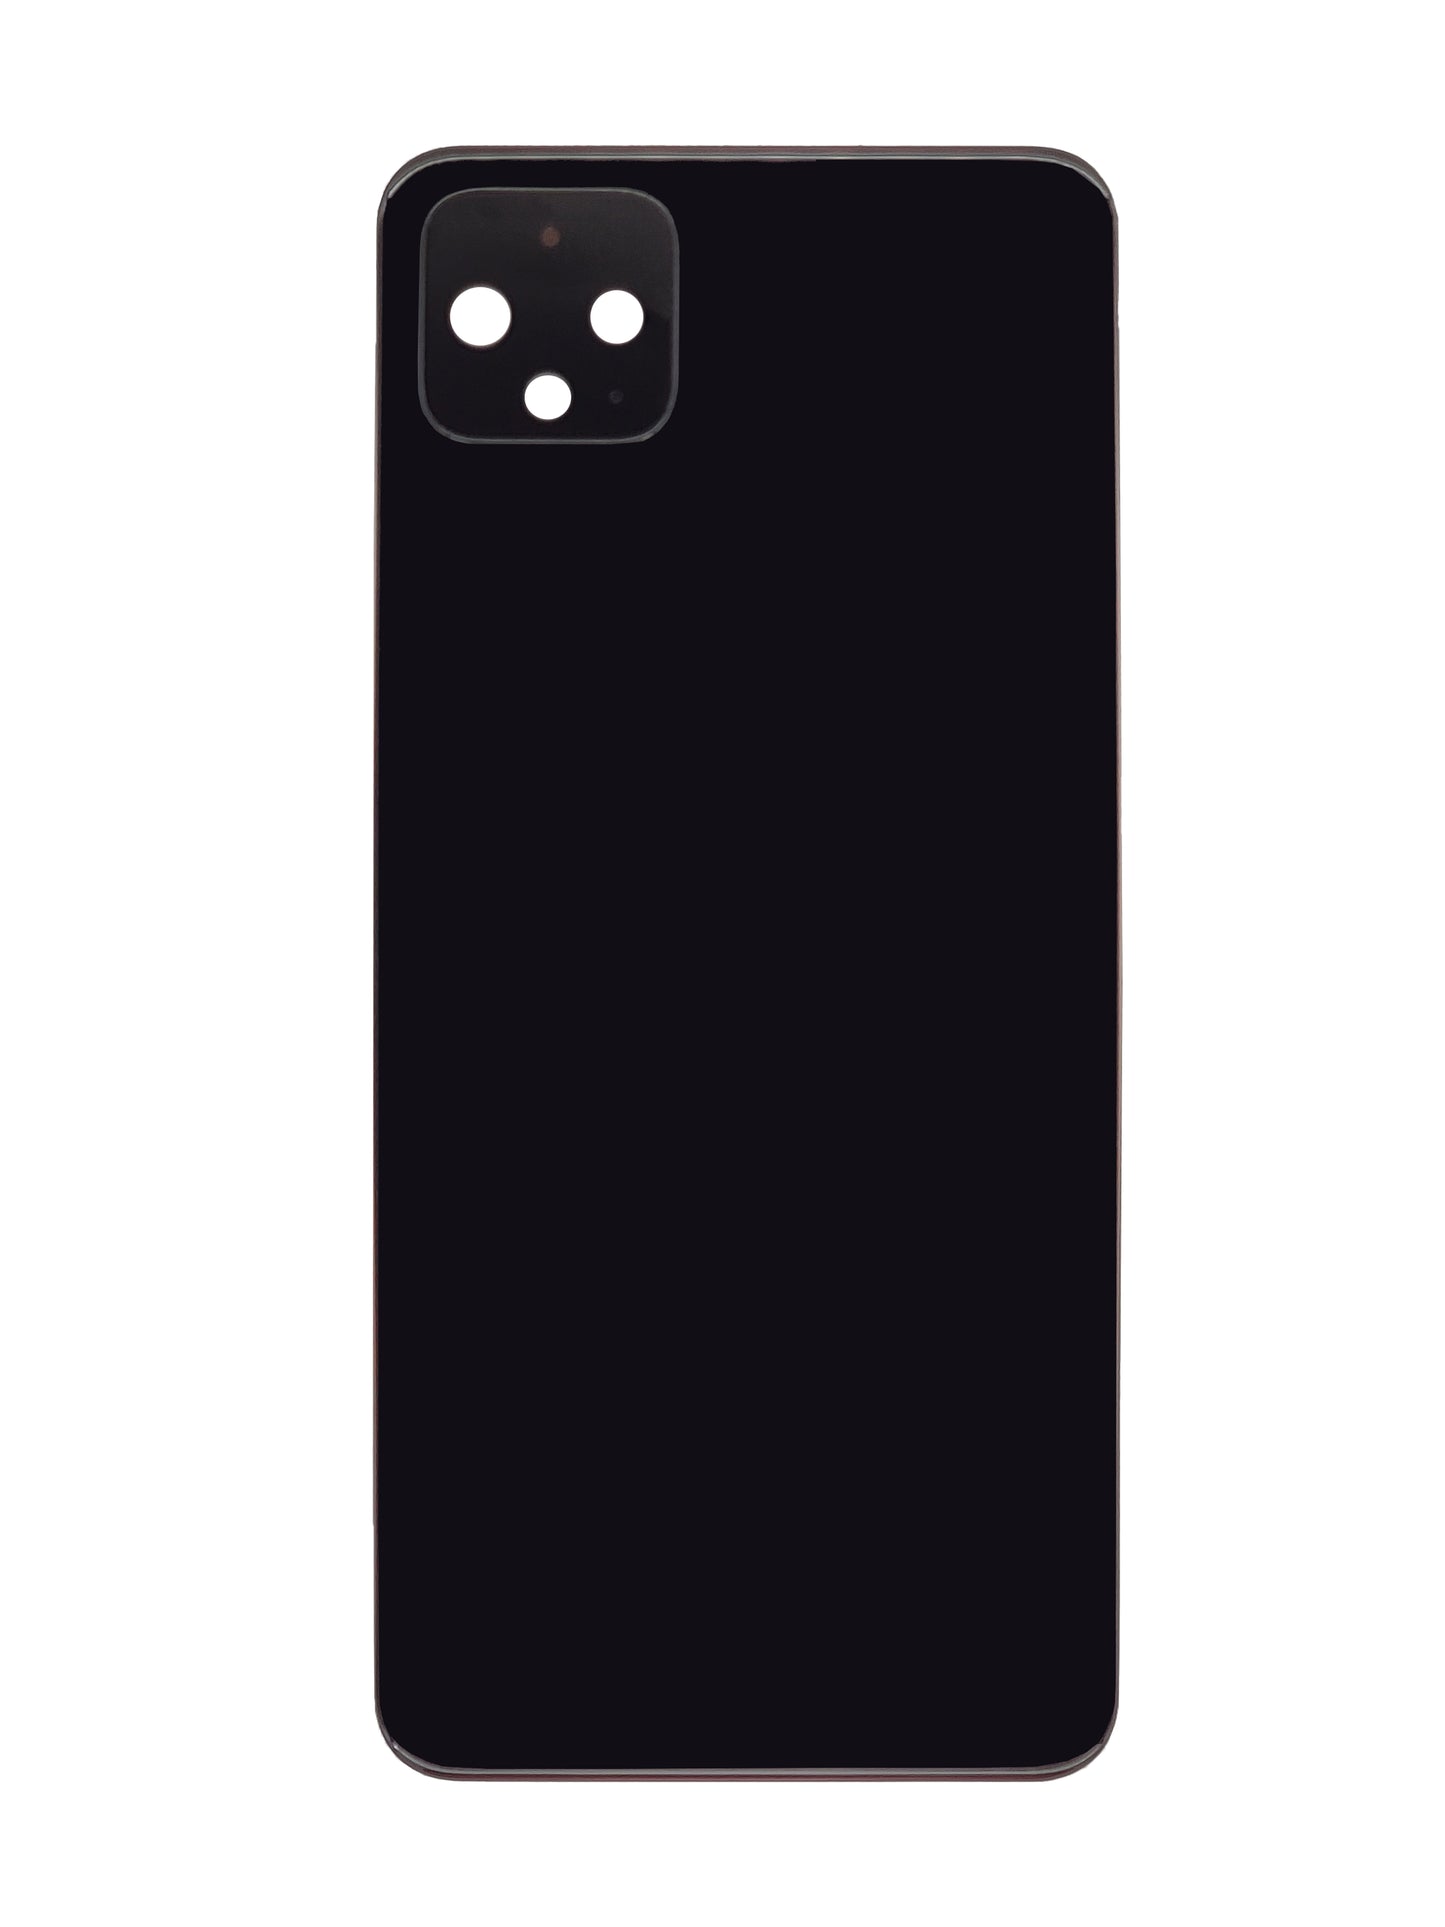 GOP Pixel 4 XL Back Cover (Black)